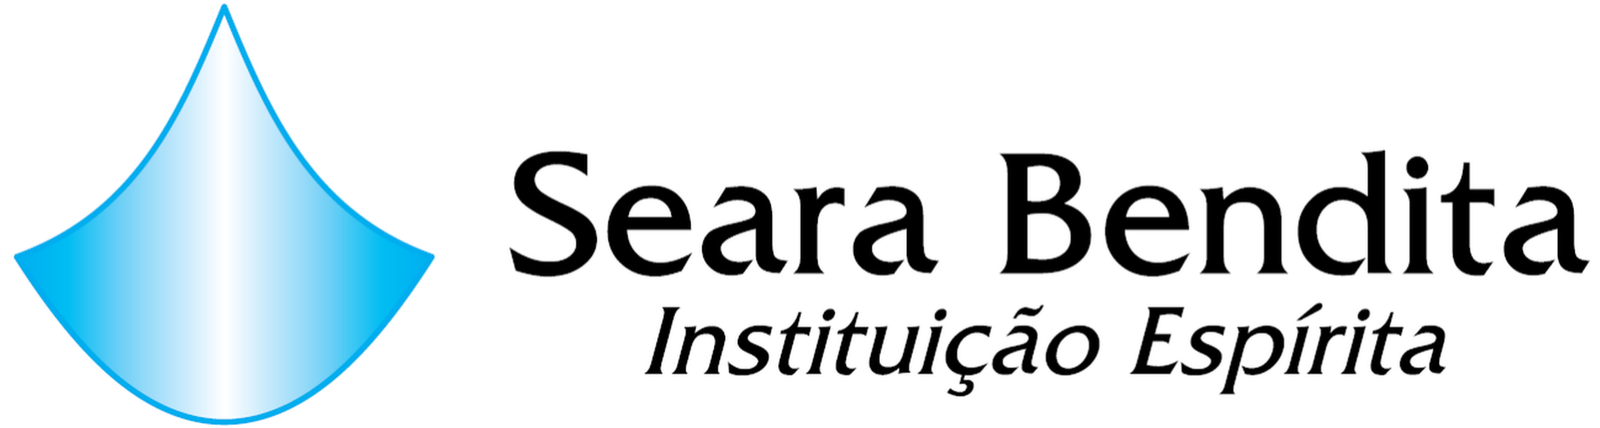 Logotipo Seara Bendita